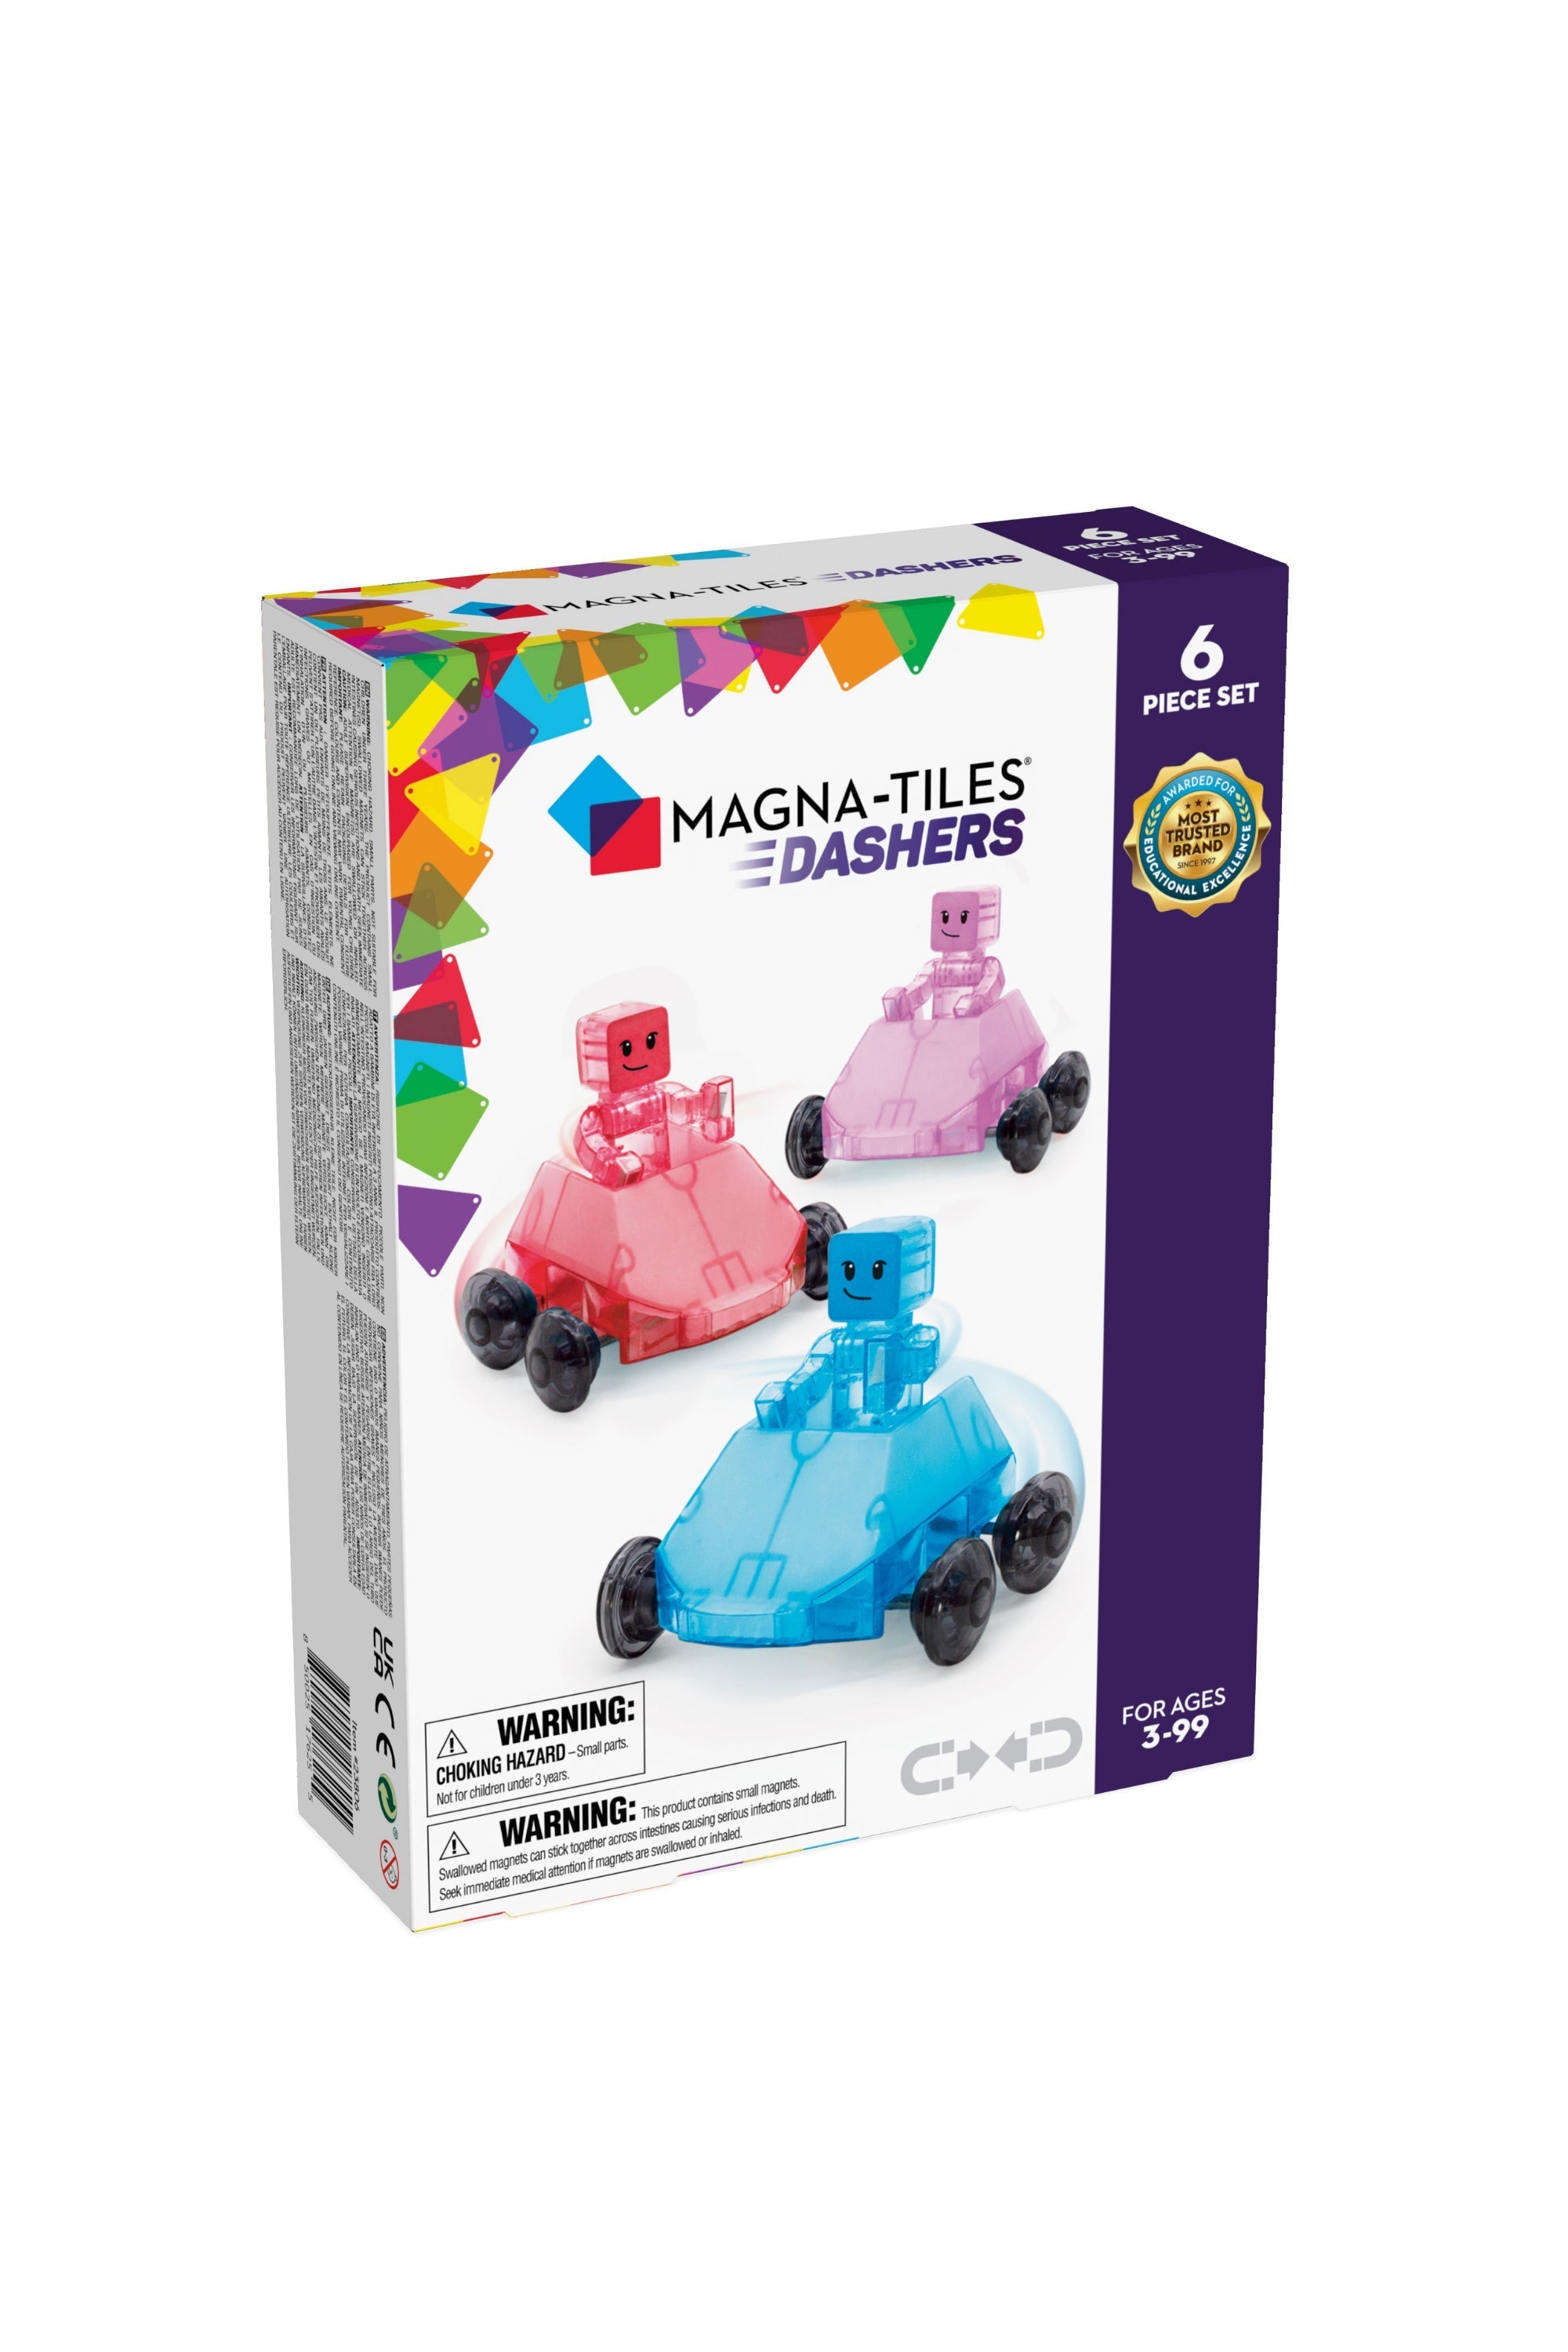 Magna-Tiles Dashers 6-Piece Set